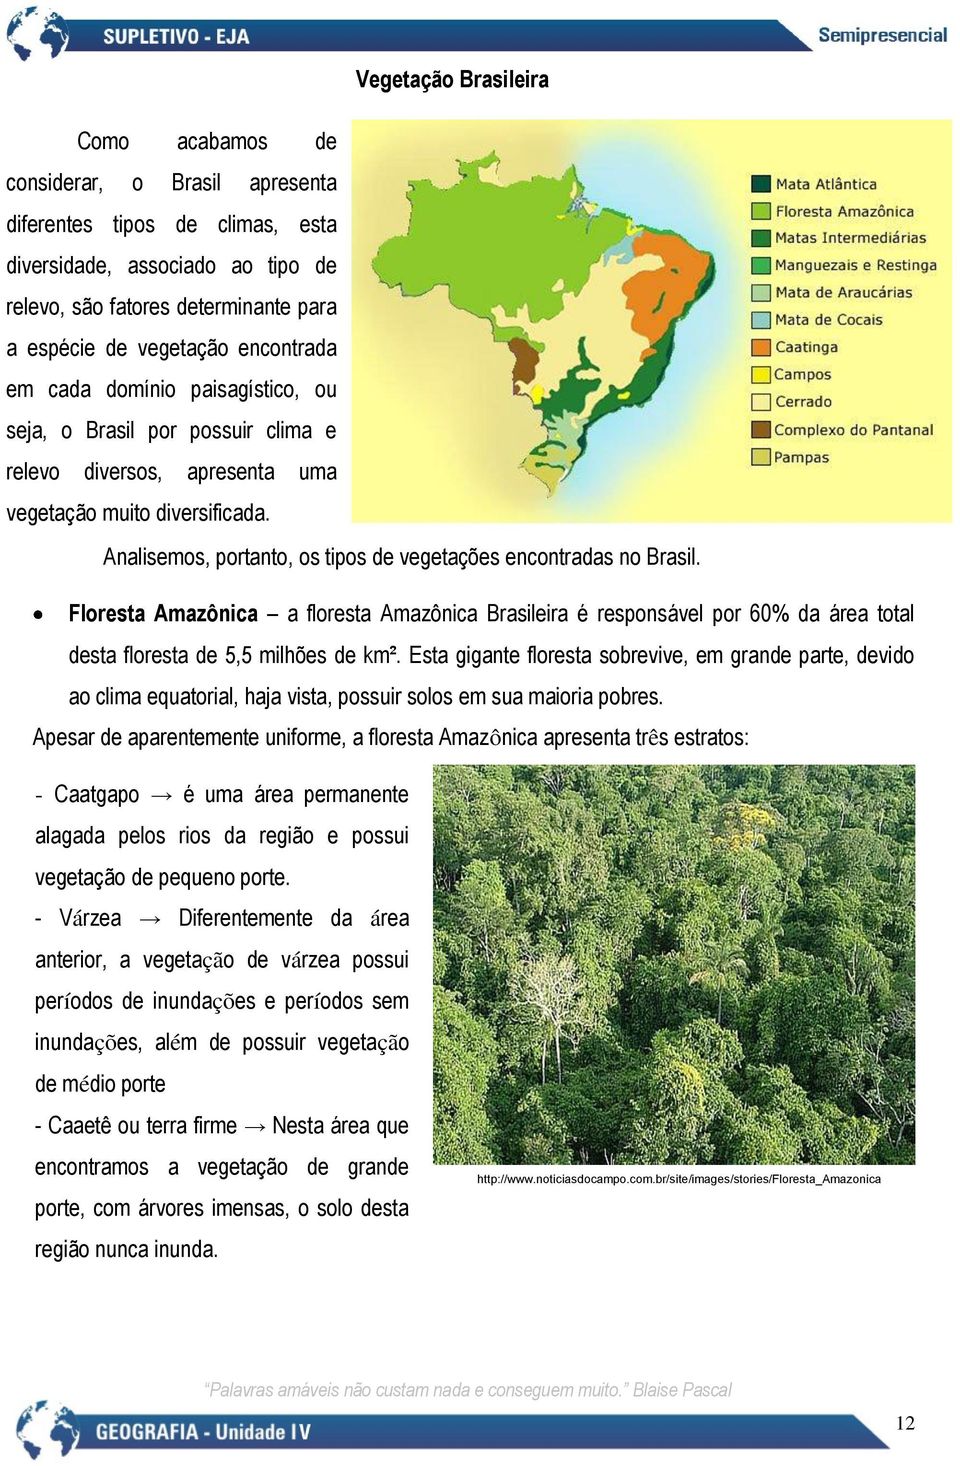 Analisemos, portanto, os tipos de vegetações encontradas no Brasil. Floresta Amazônica a floresta Amazônica Brasileira é responsável por 60% da área total desta floresta de 5,5 milhões de km².